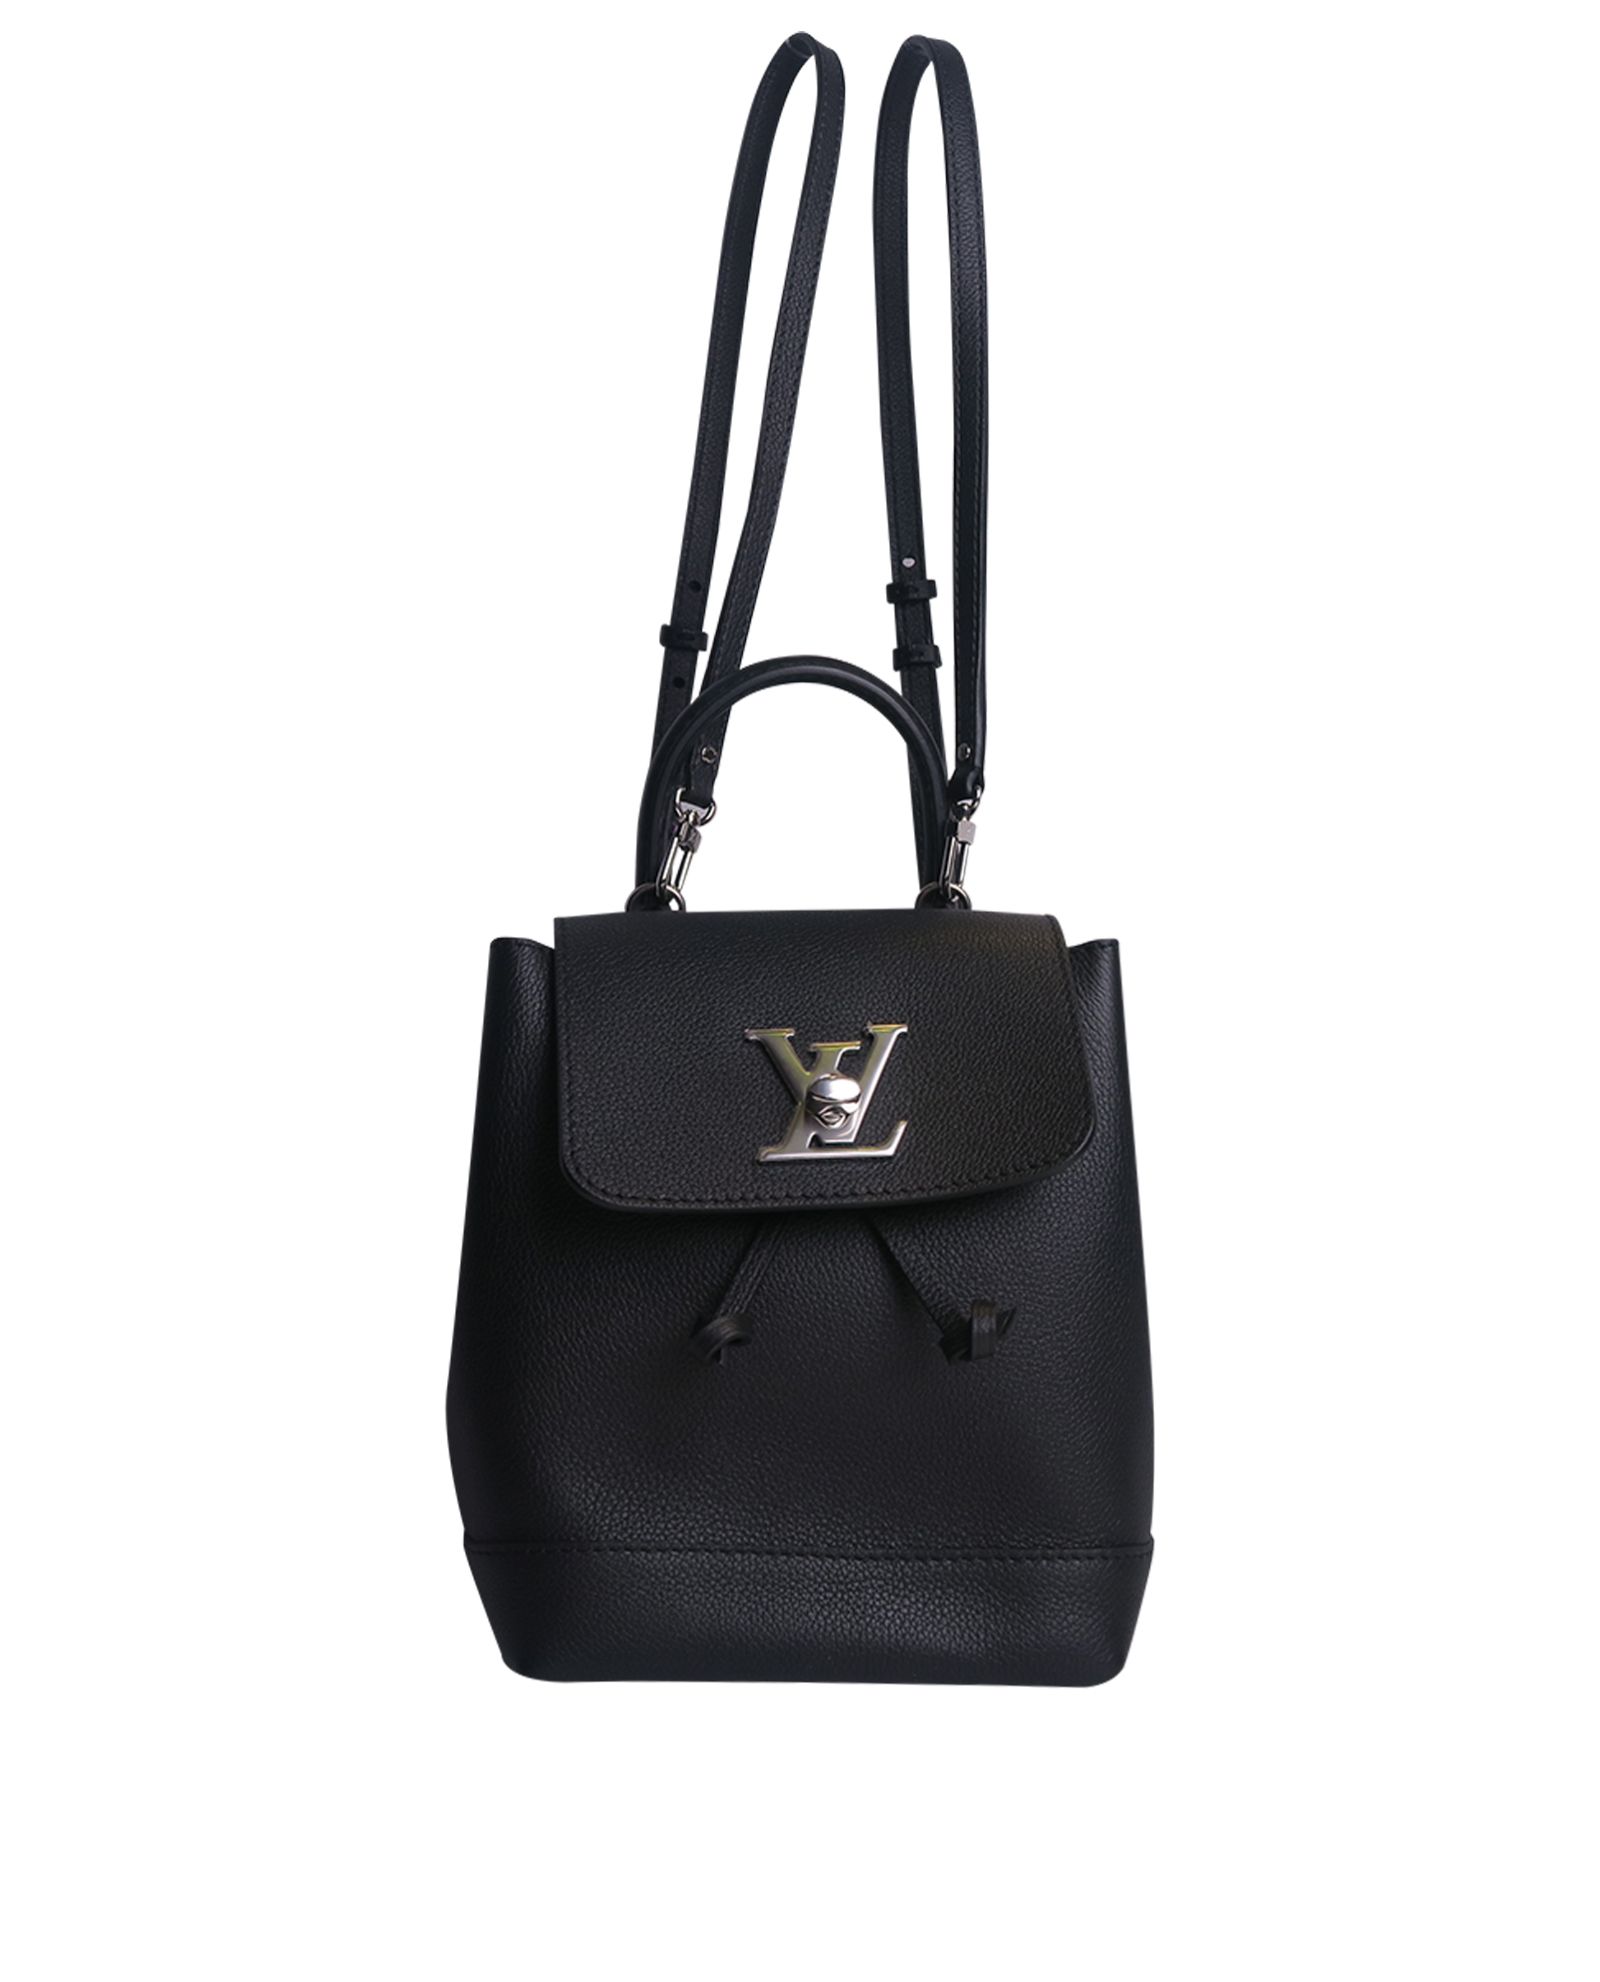 Louis Vuitton Black Leather Mini Lockme Backpack Louis Vuitton